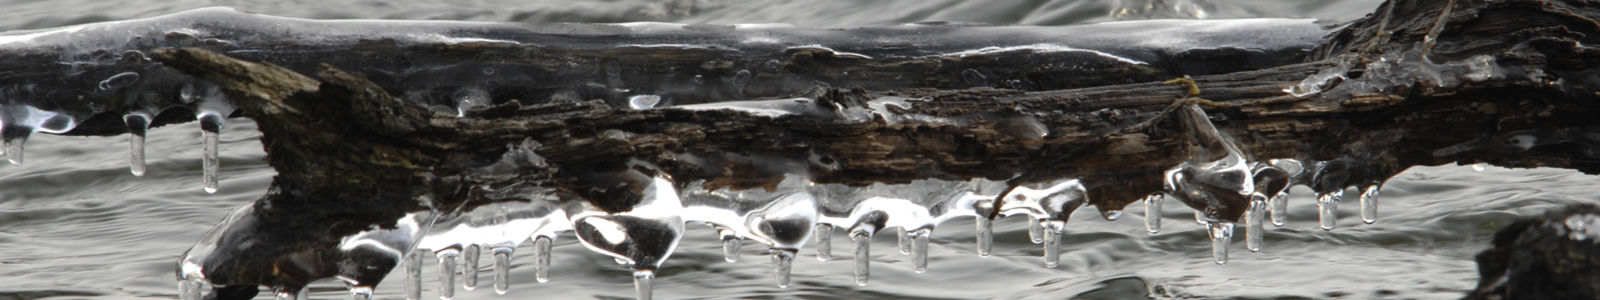 Ast mit Eiszapfen hängt über Wasser ©LfL bayern